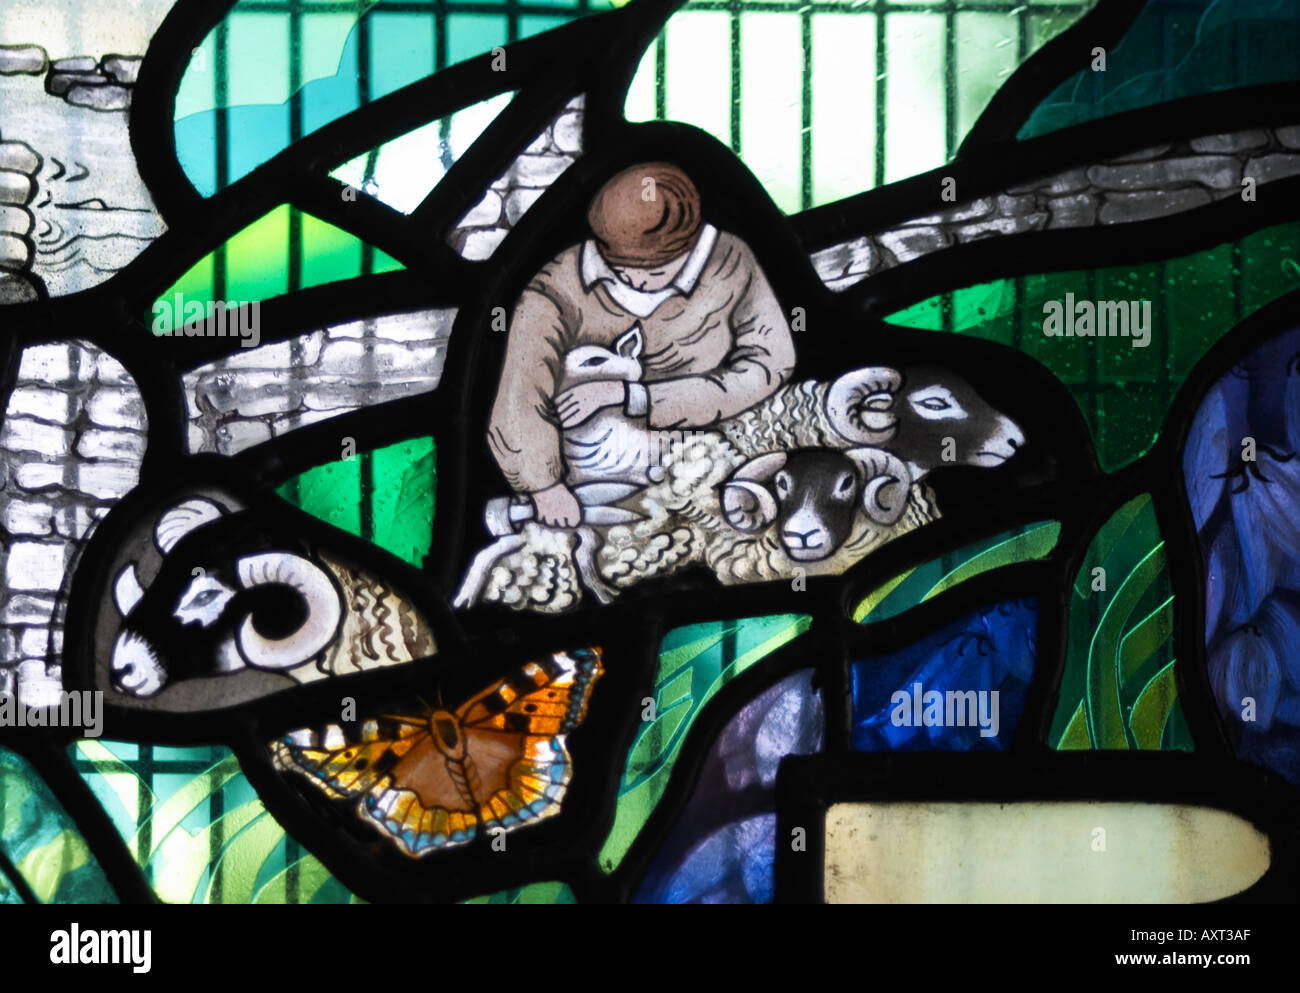 Détail du vitrail à l'église St Peter s Stainforth Yorkshire Dales National Park England UK Banque D'Images